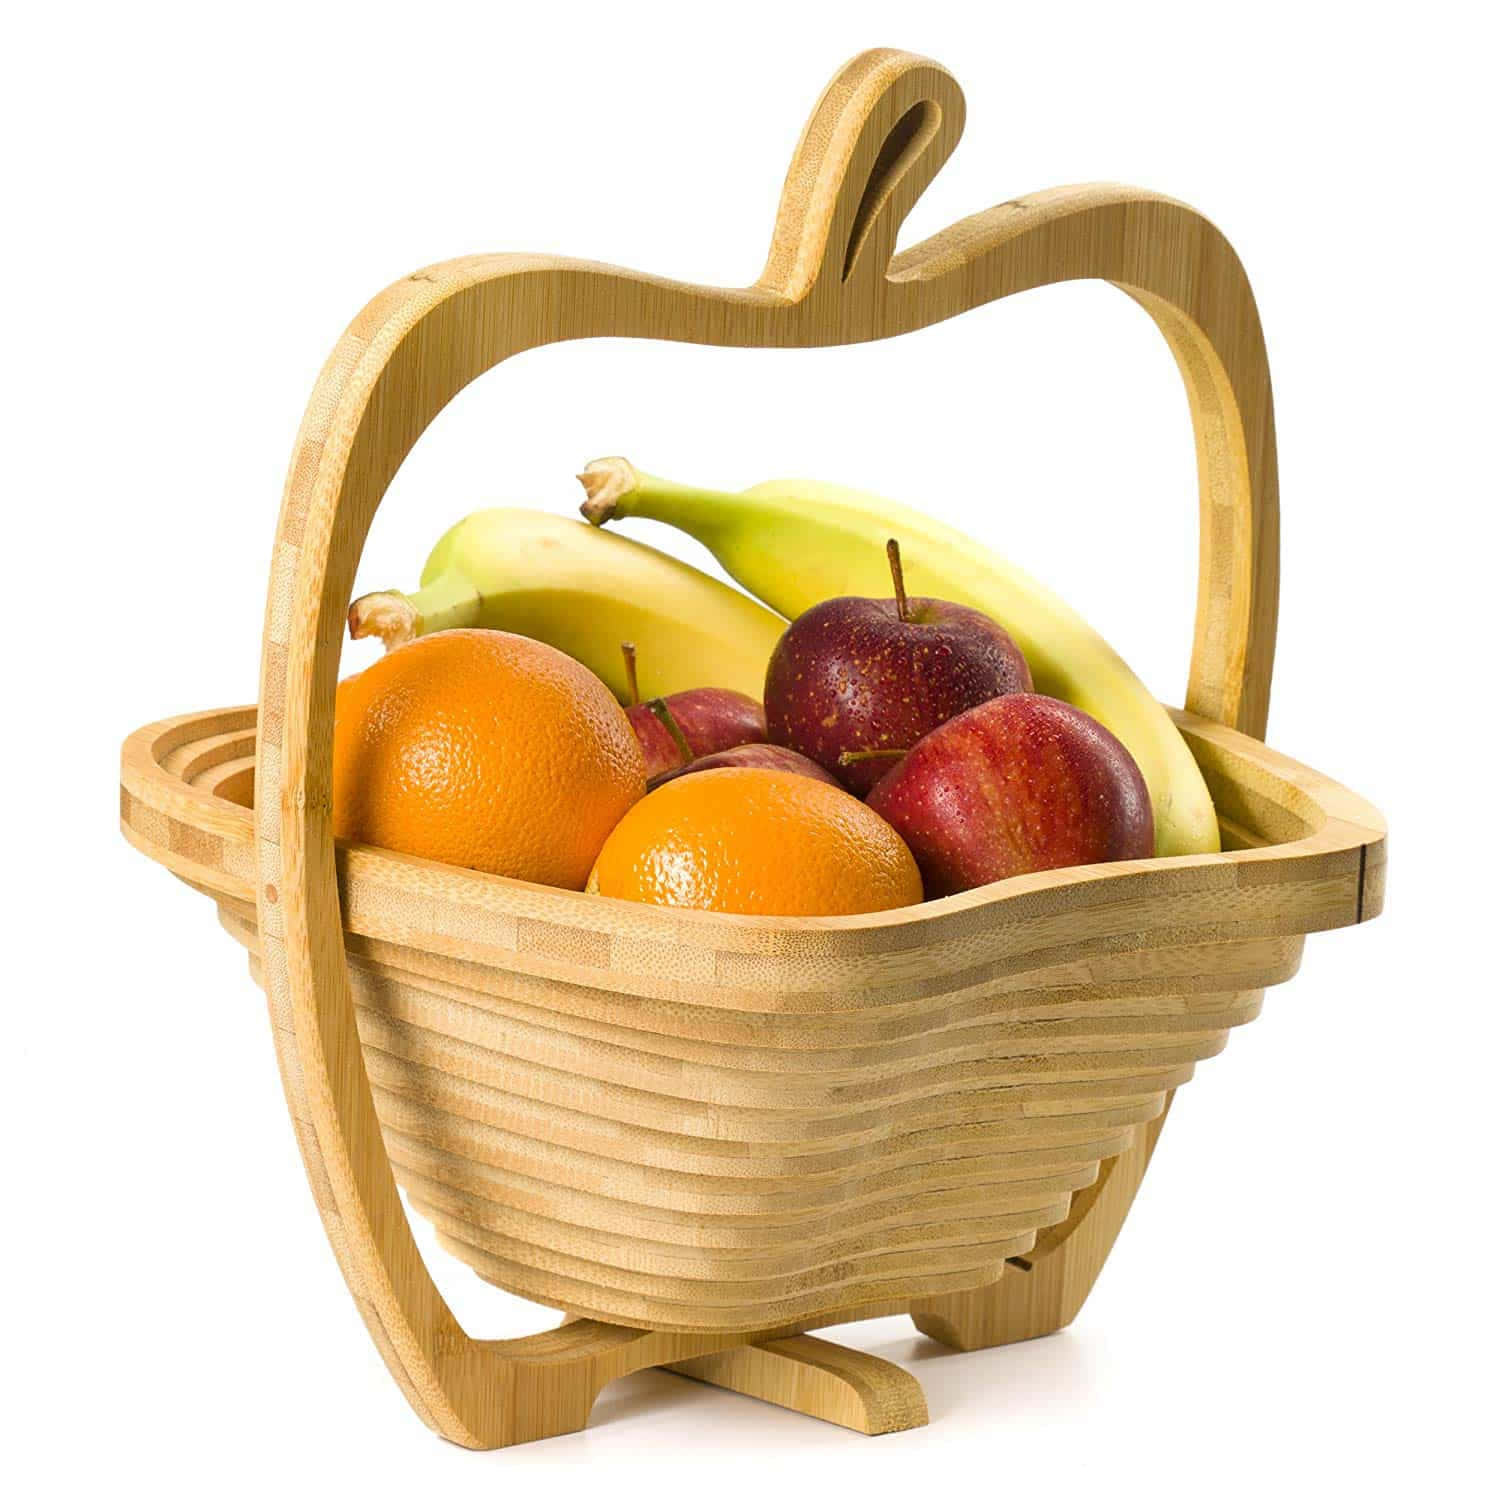 Diviértetecon El Reparto De Fruits Basket